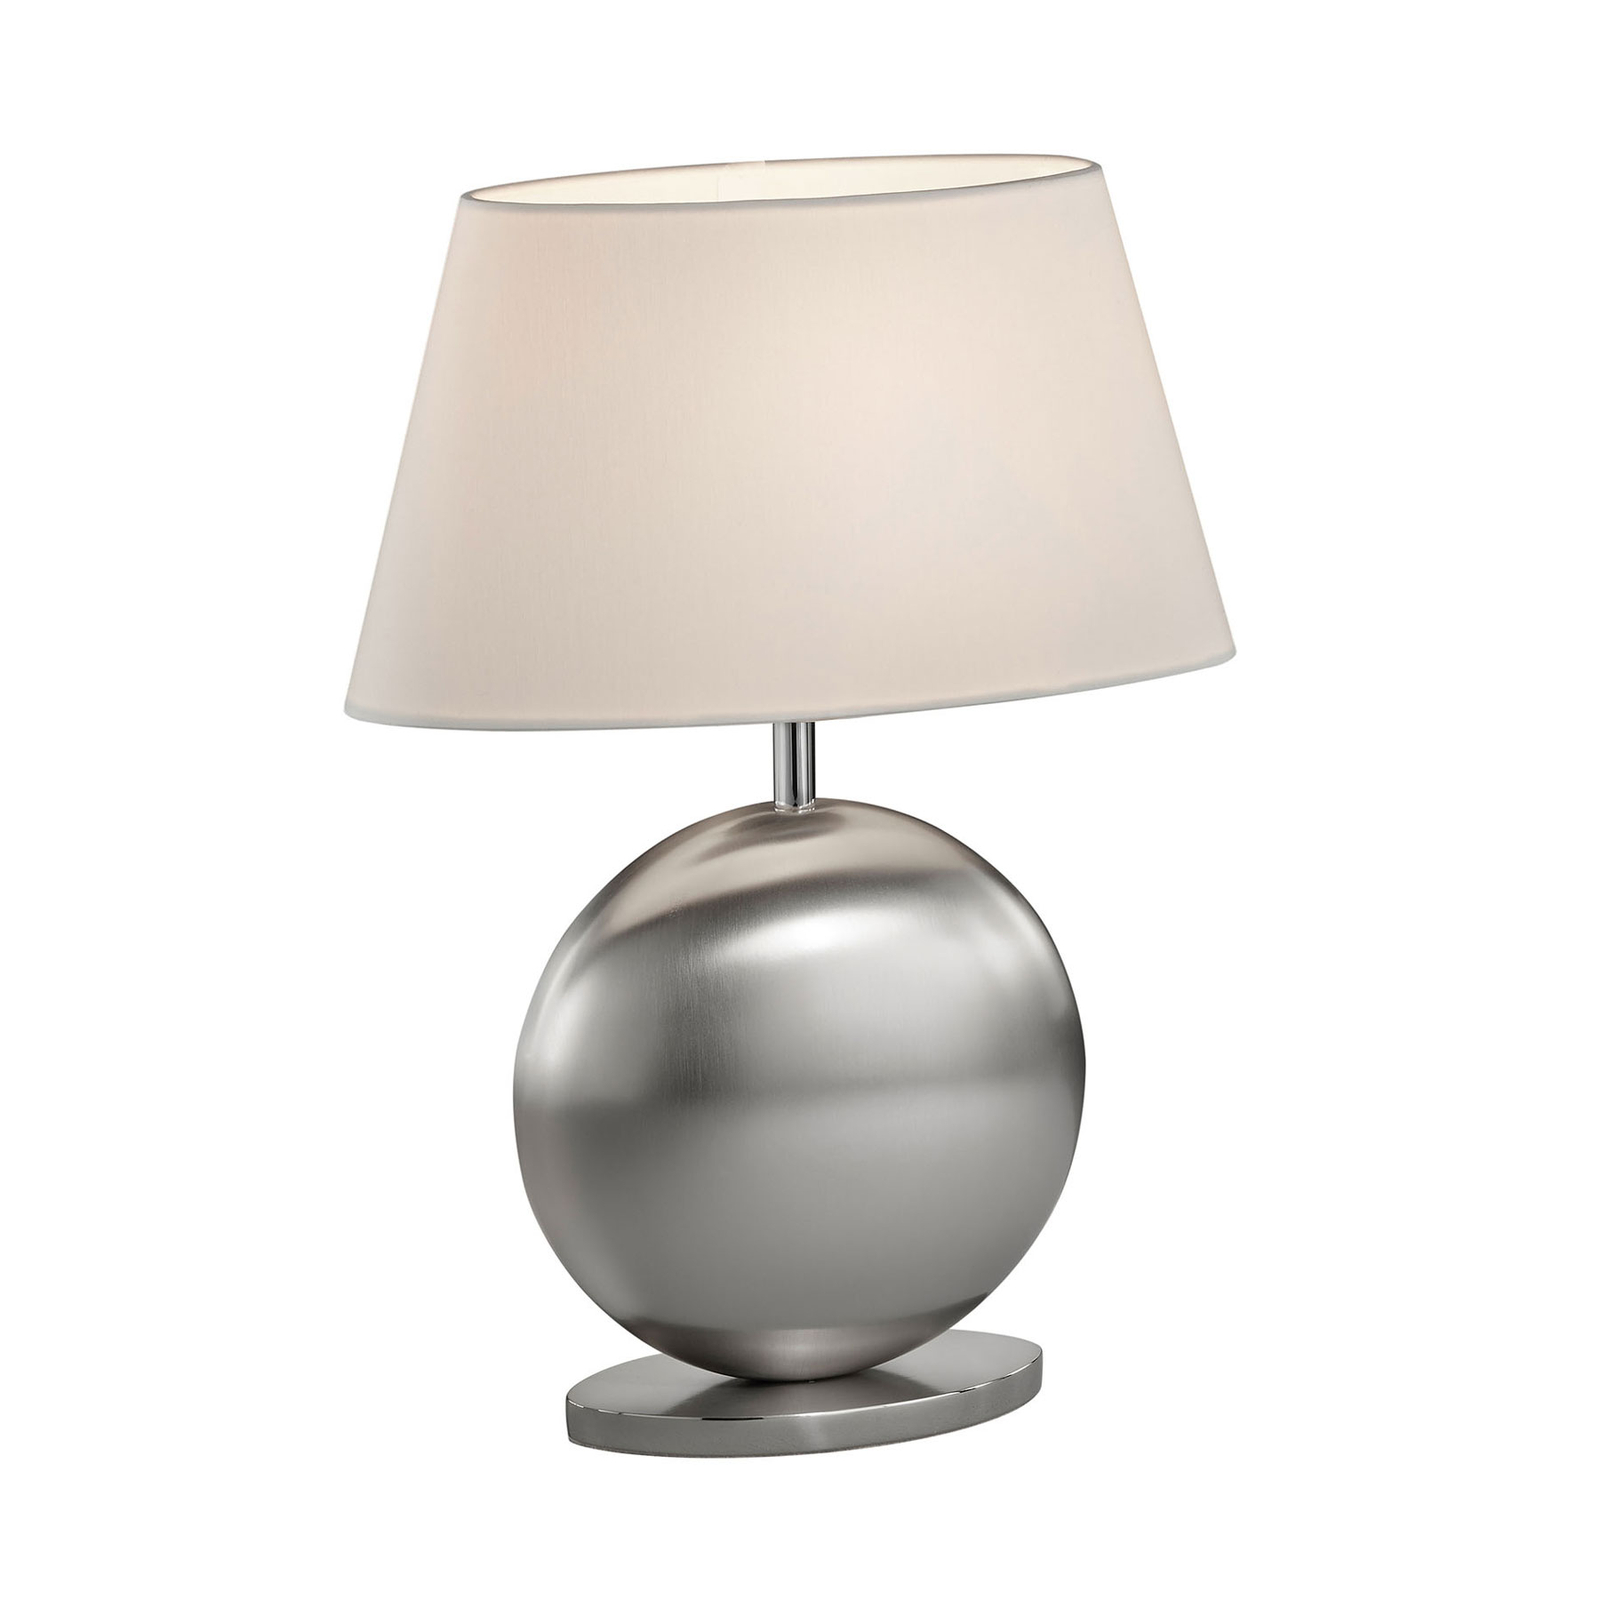 BANKAMP Asolo lampa stołowa, biała/nikiel, 41cm